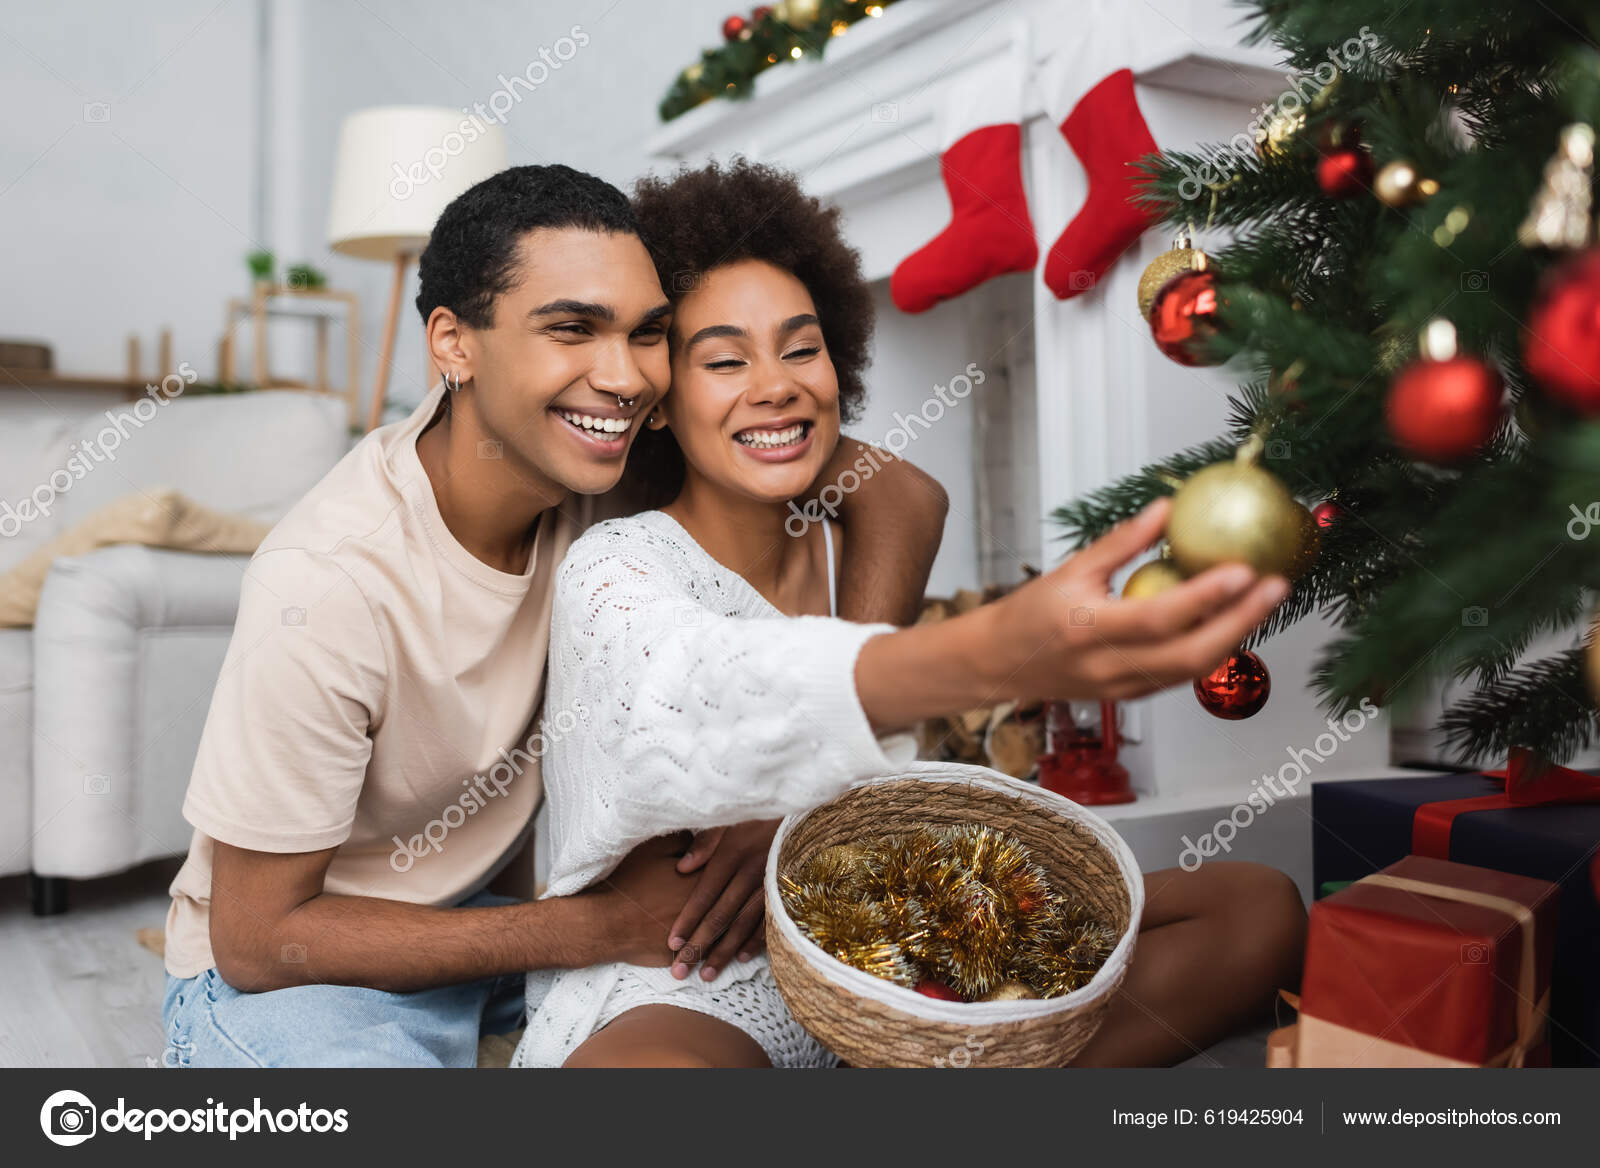 Lycklig Afrikansk Amerikansk Kvinna Dekorera Julgran Nära Pojkvän Och Korg  — Stockfotografi © HayDmitriy #619425904